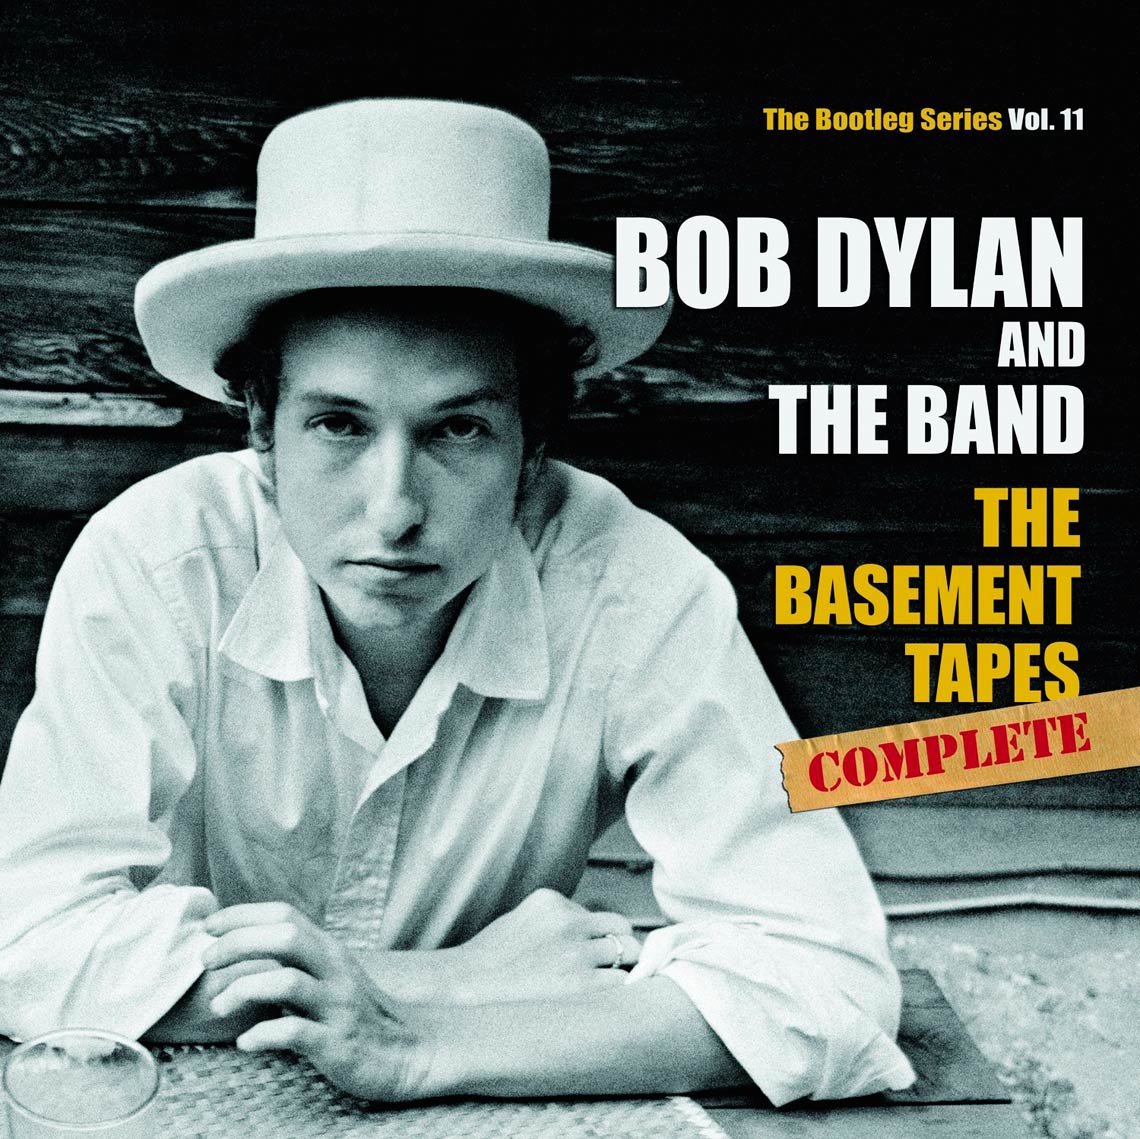 Bob Dylan: The basement tapes complete: The bootleg series Vol. 11, la  portada del disco